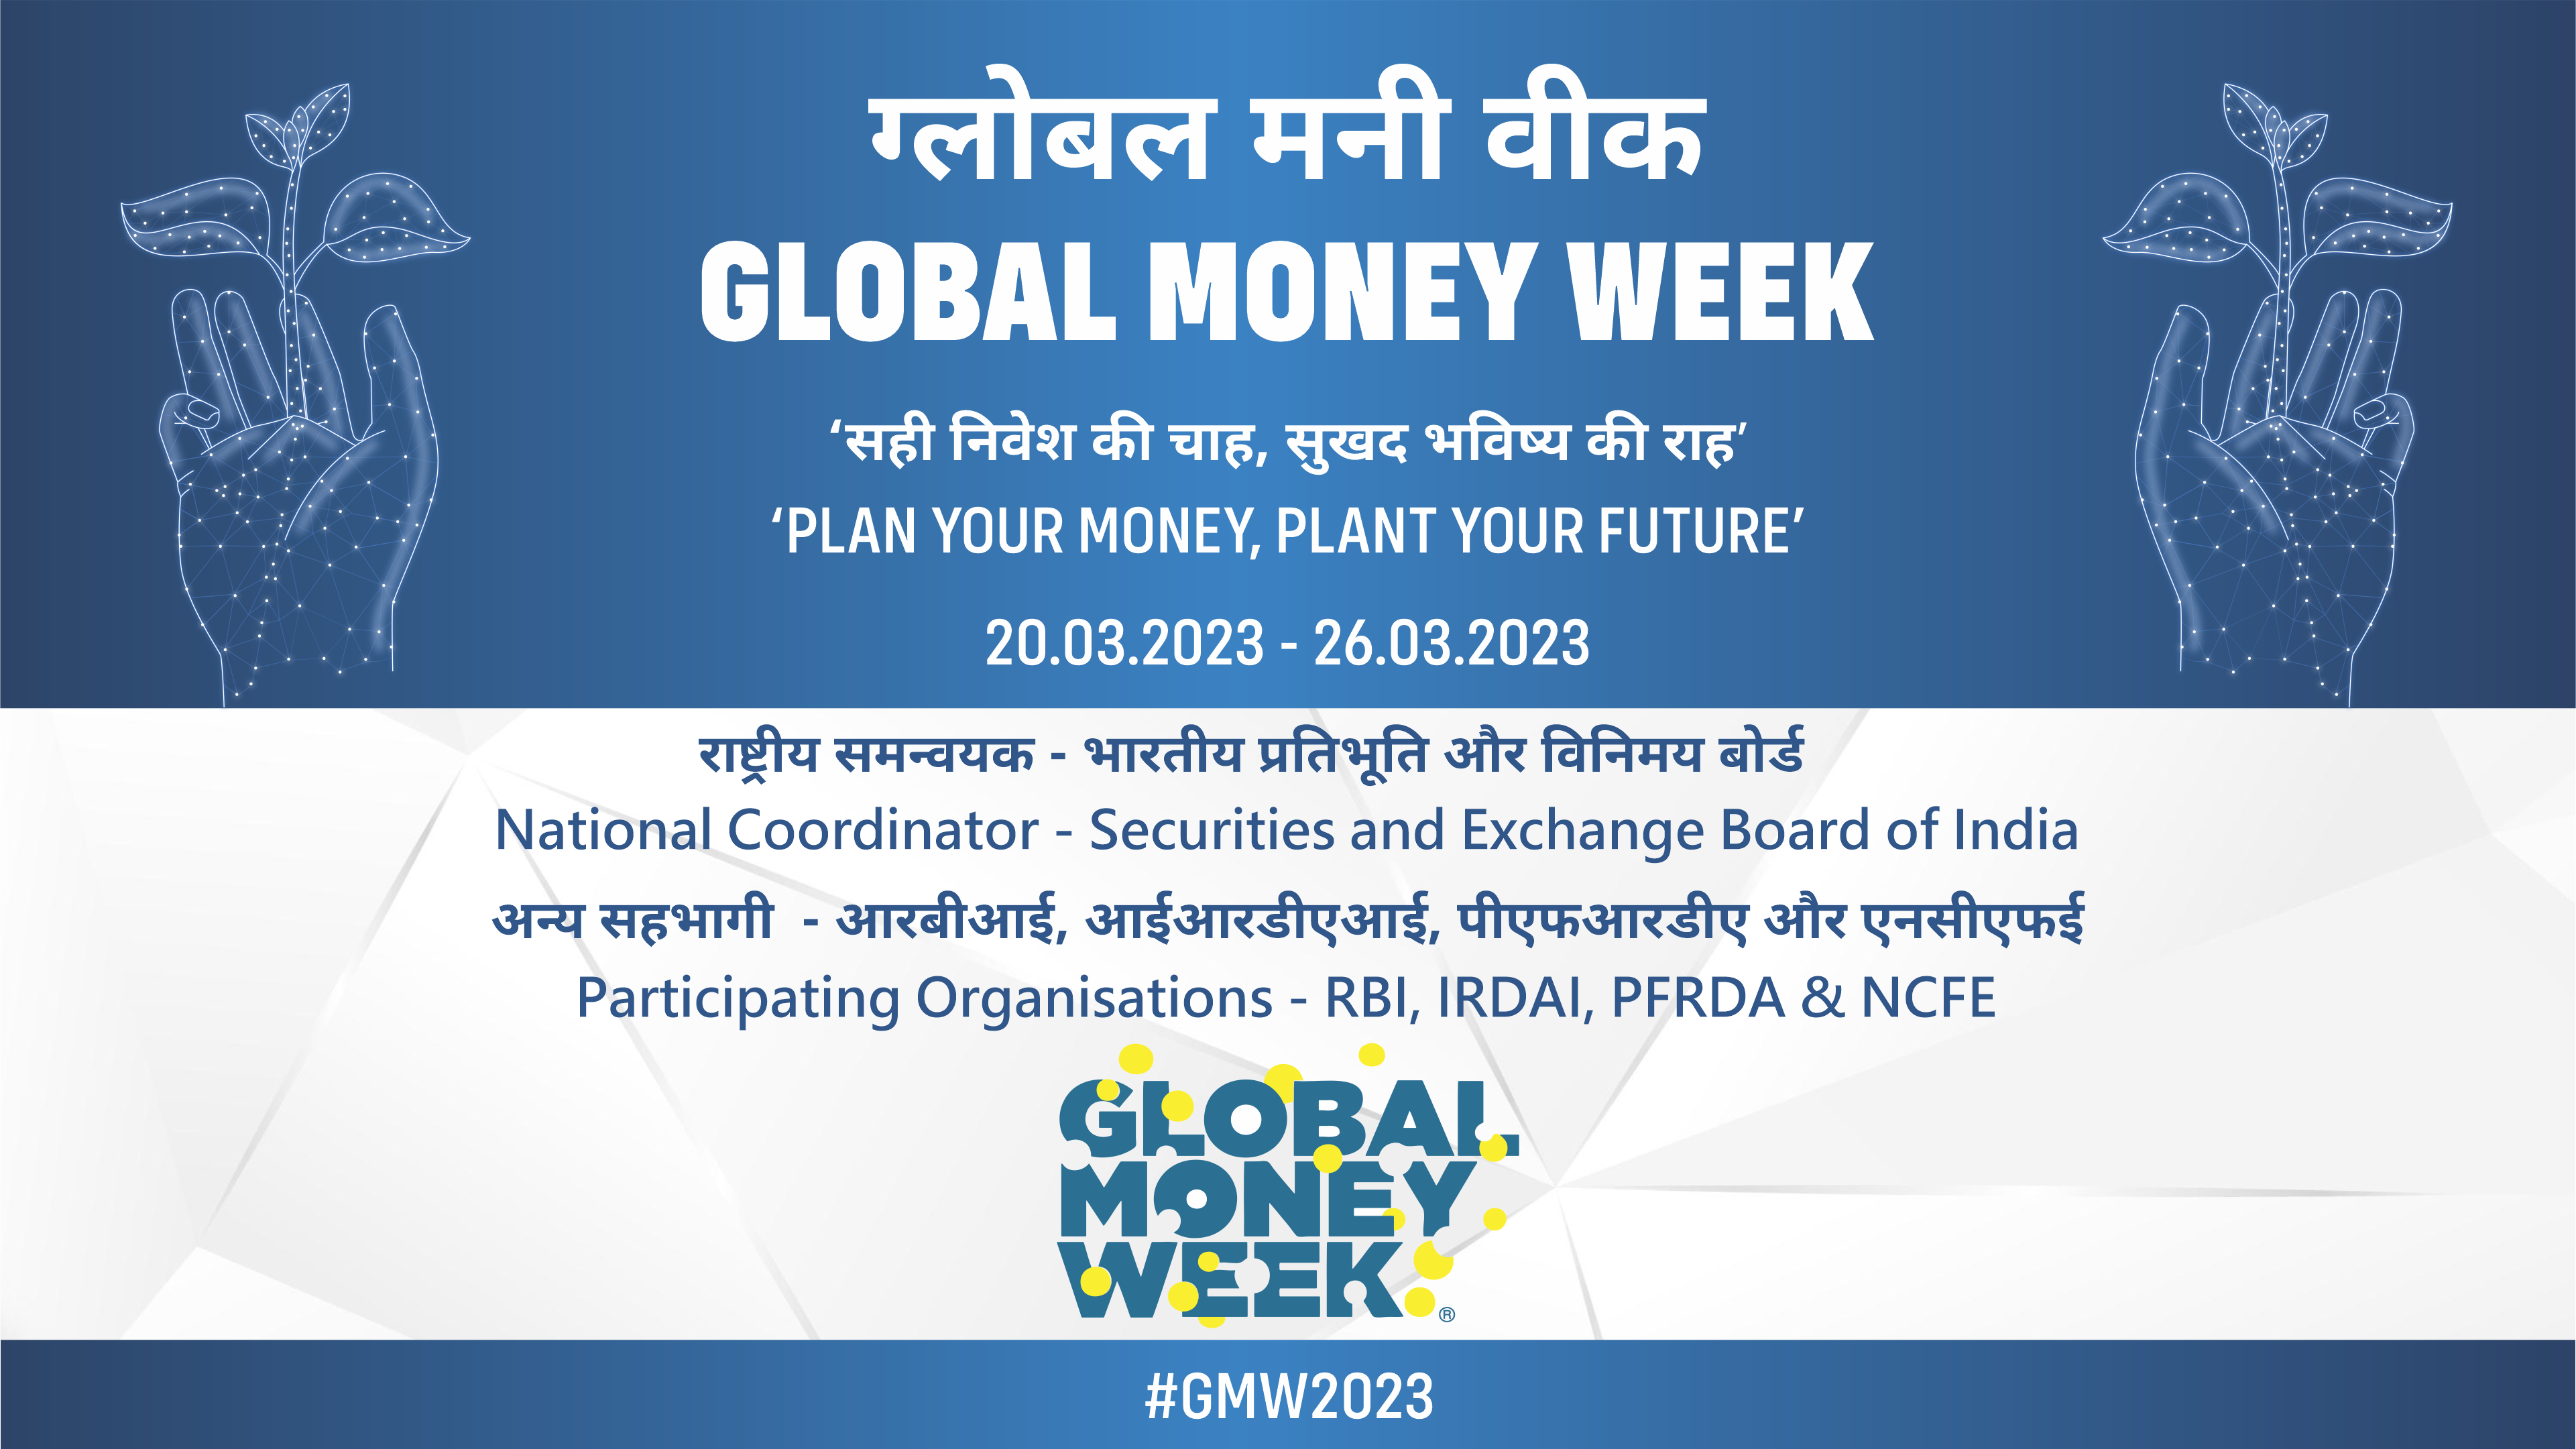 NCFE - Celebration of Global Money Week 2023